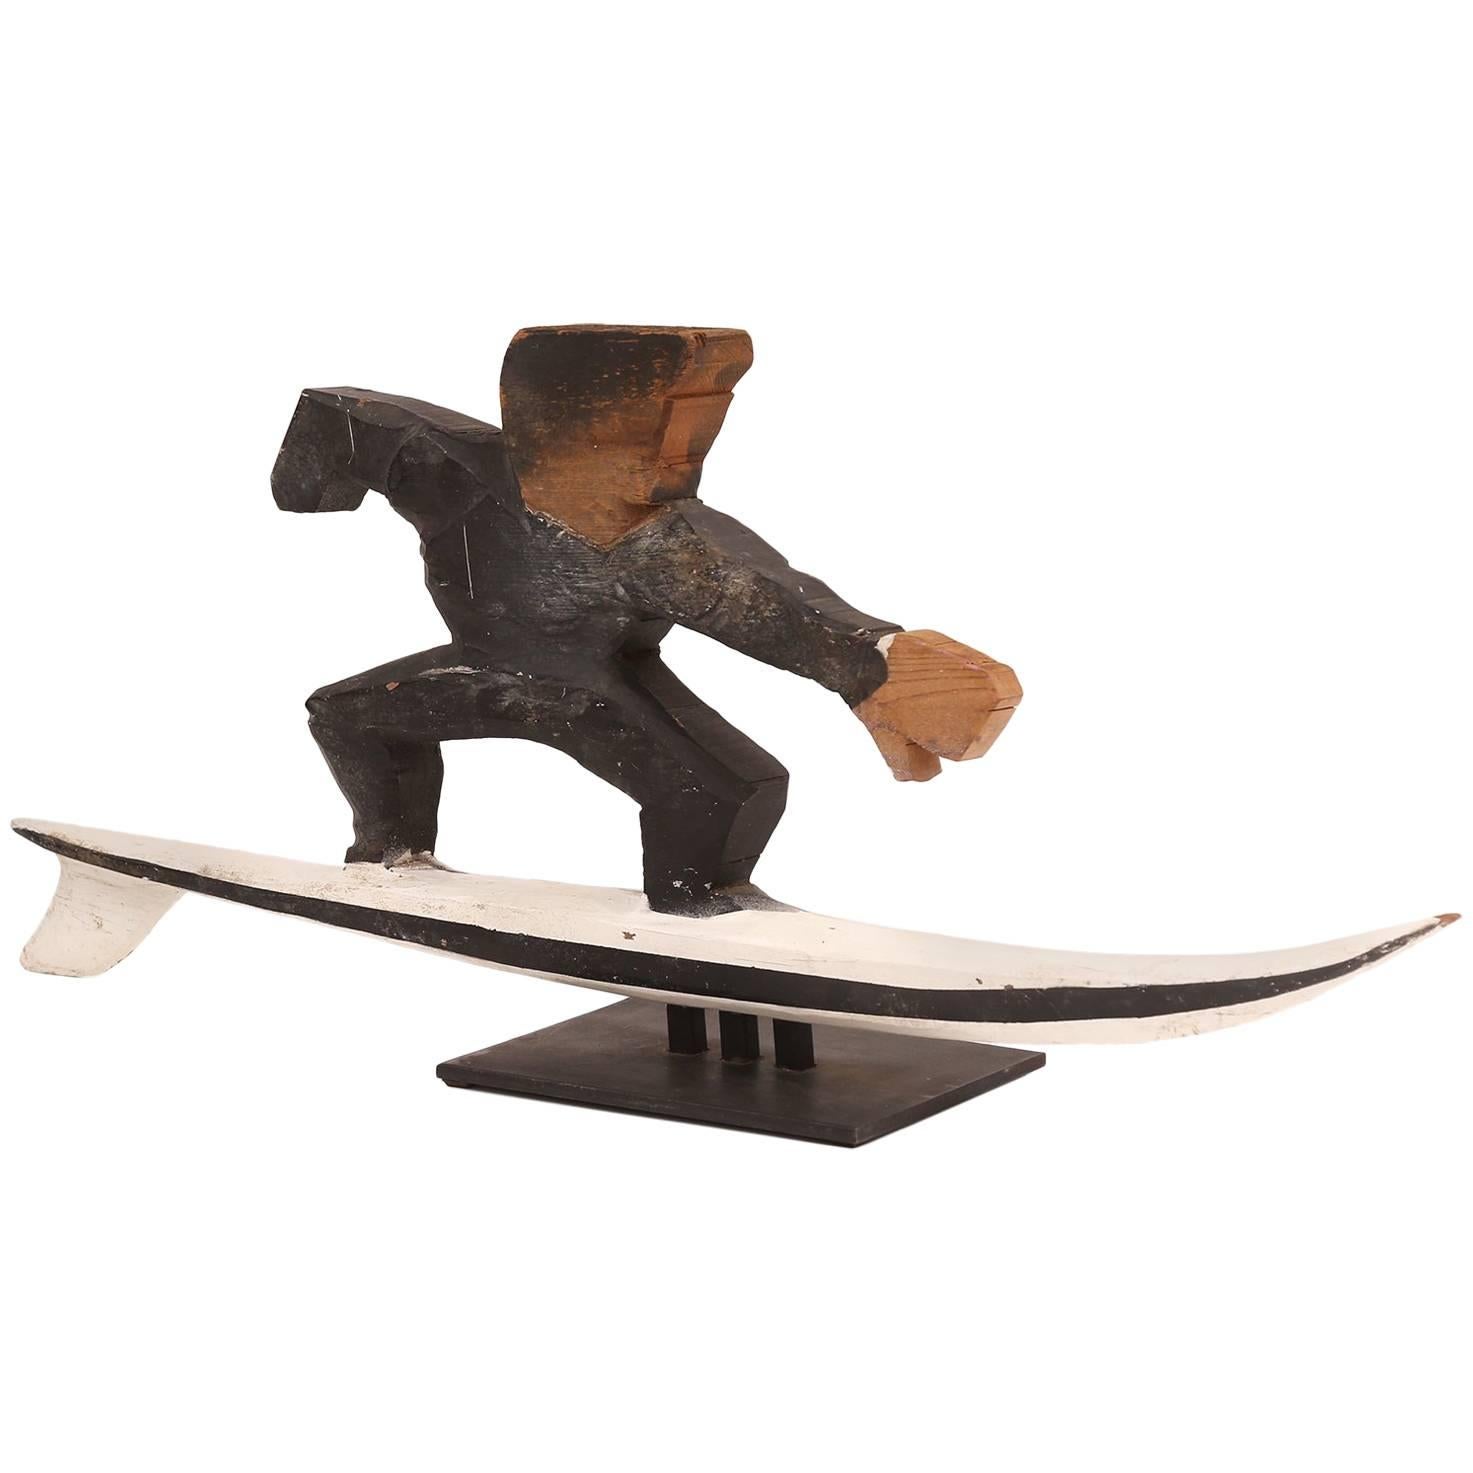 Folk Art Wood Surfer Sculpture